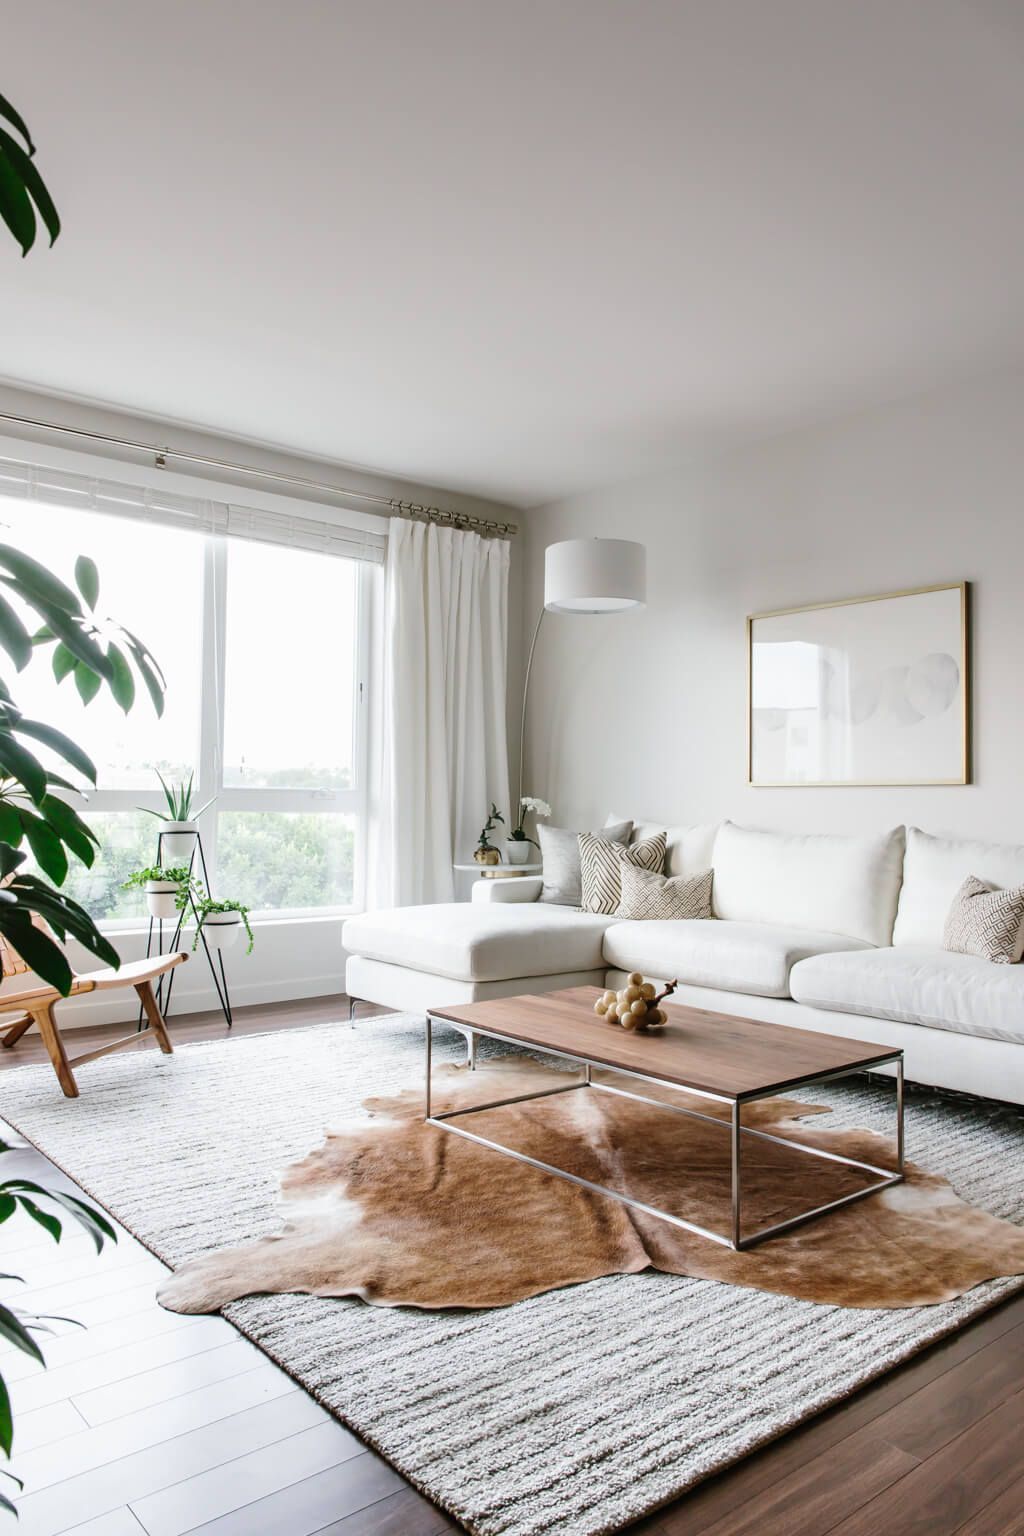 Nội thất nhỏ gọn, tinh tế theo phong cách tối giản phù hợp với không gian phòng khách hẹp